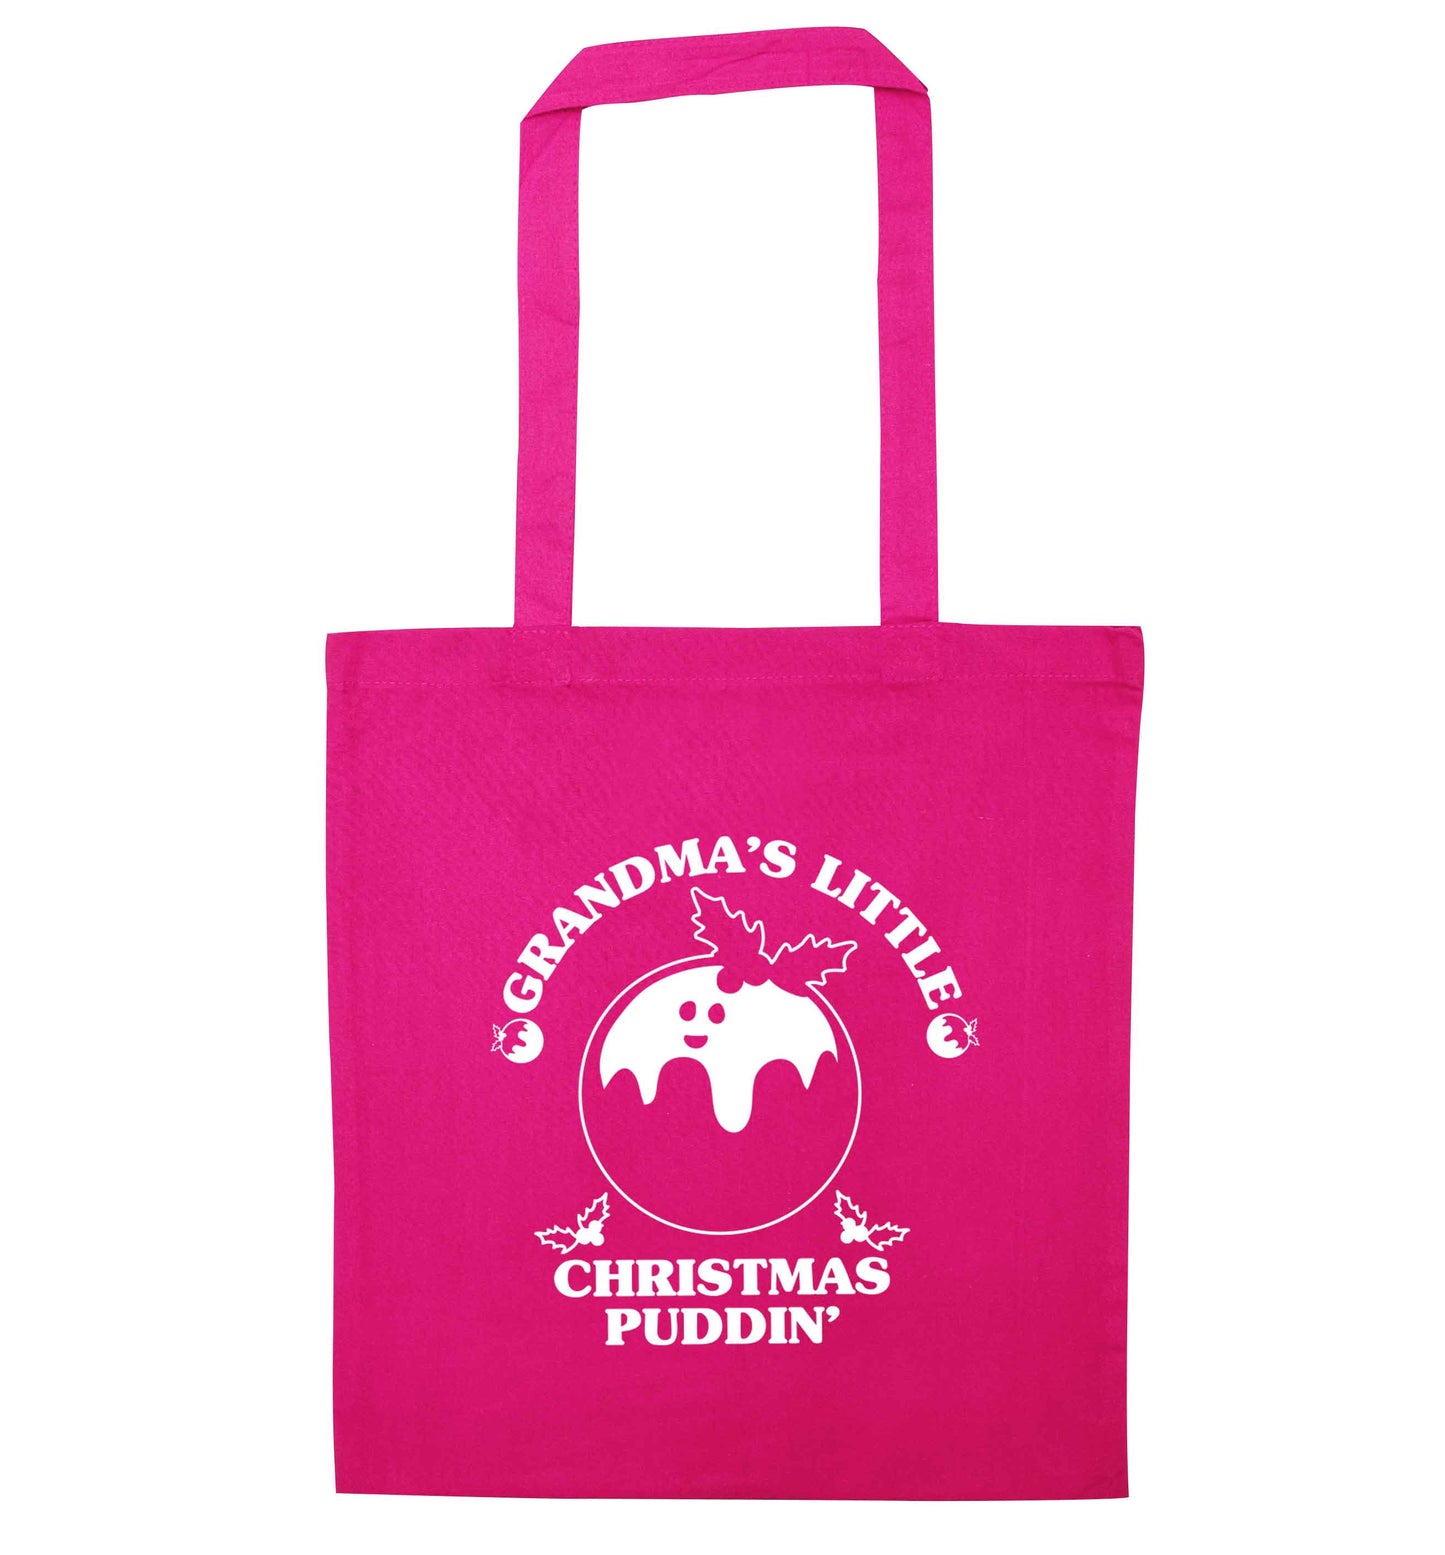 Grandma's little Christmas puddin' pink tote bag